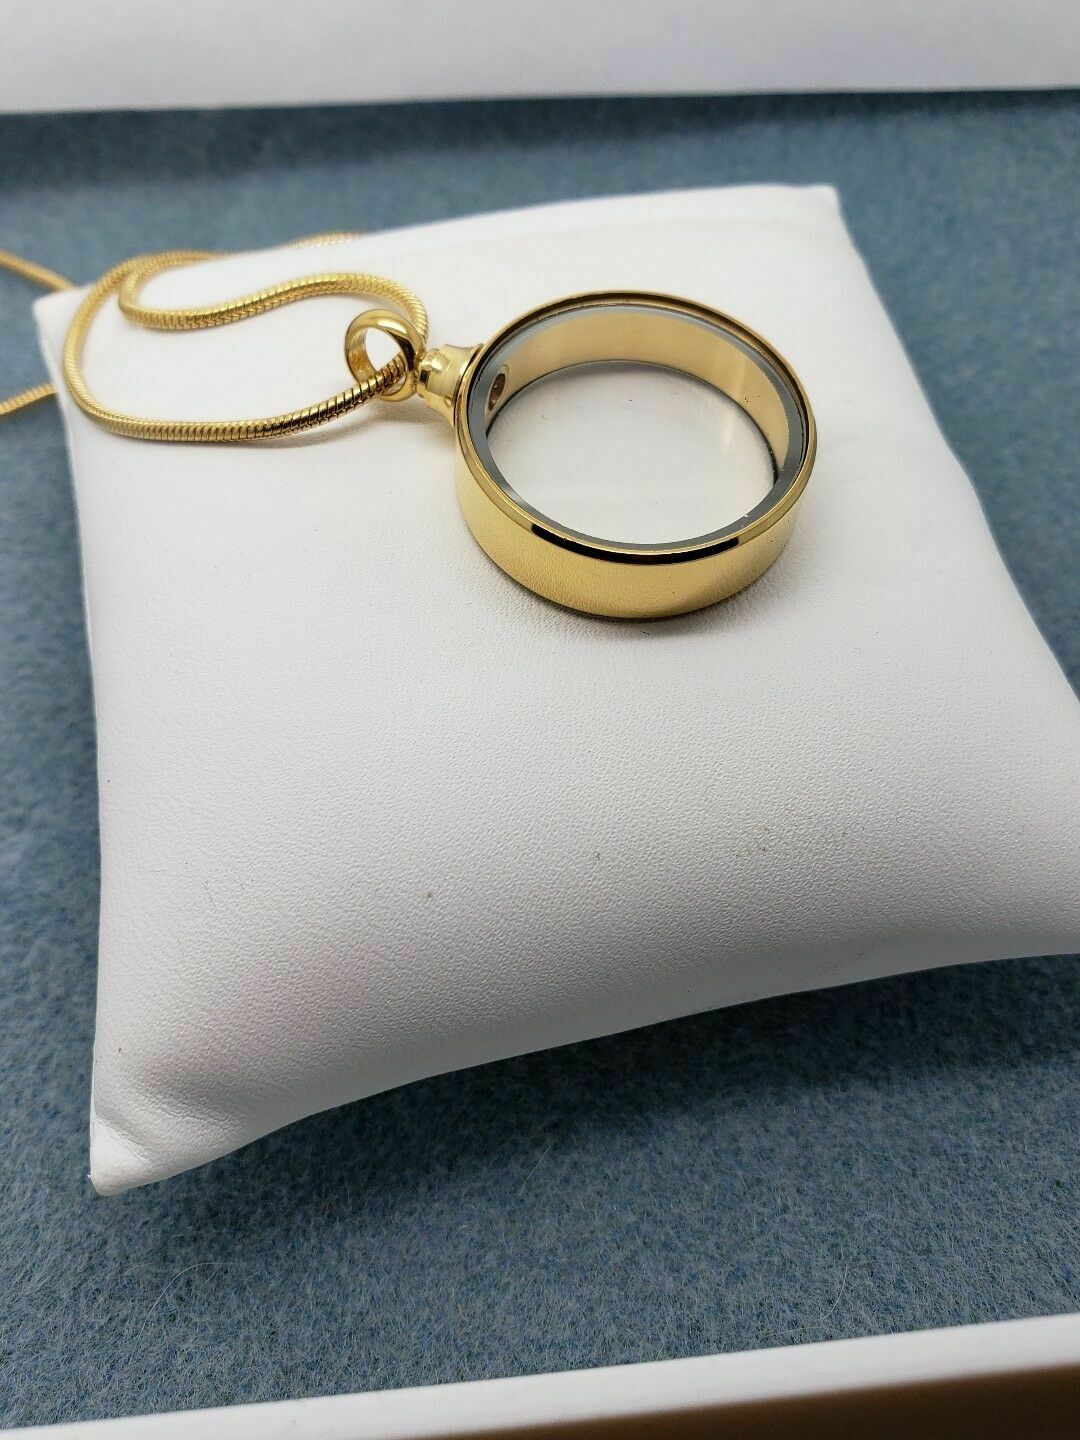 Round See Through Keepsake Cremation Urn Glass Gold Steel Pendant Necklace - Matties Modern Jewelry